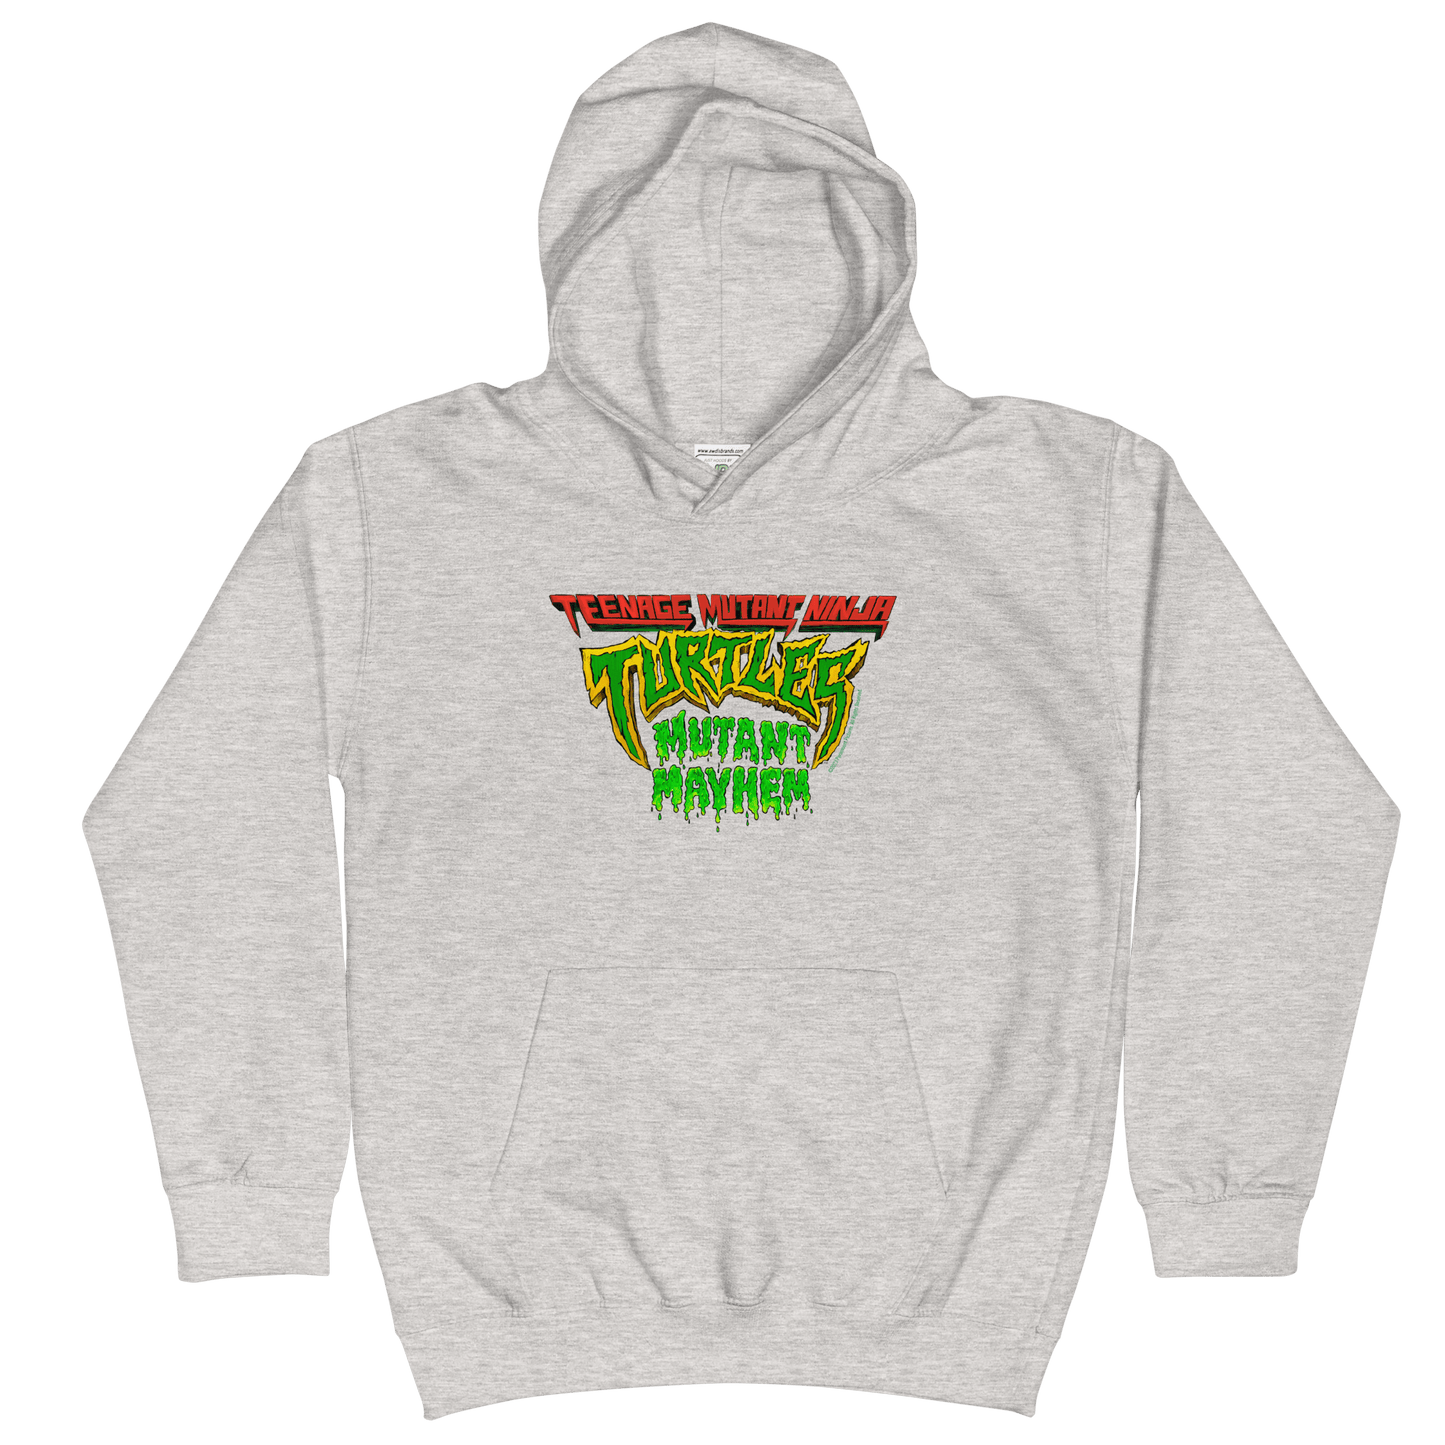 Teenage Mutant Ninja Turtles: Mutant Mayhem Logo Kids Hooded Sweatshirt - Paramount Shop